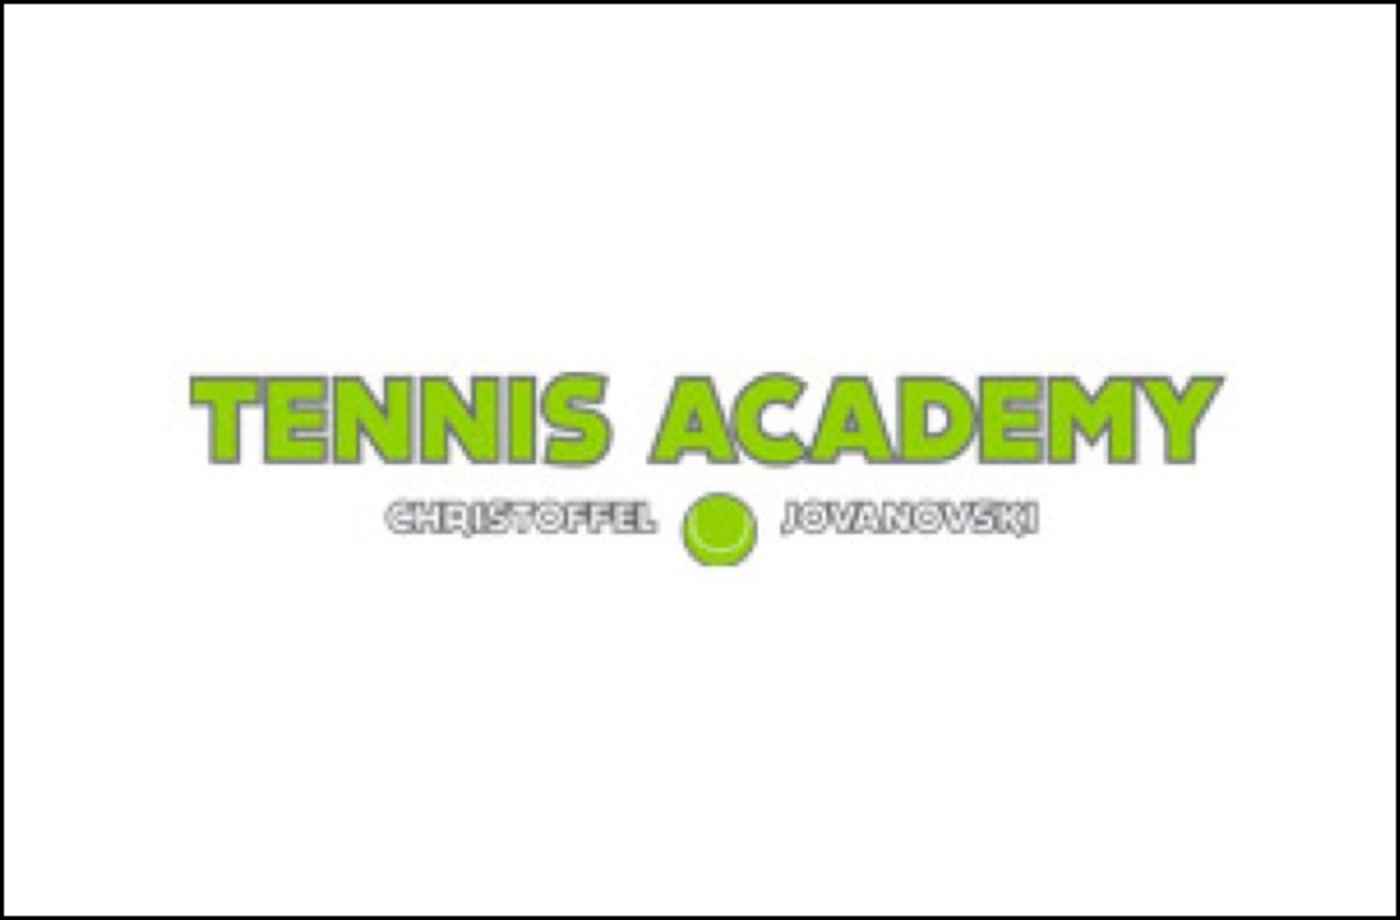 mairec edelmetall precious metal recycling sponsor tennis academy christoffel jovanowsky